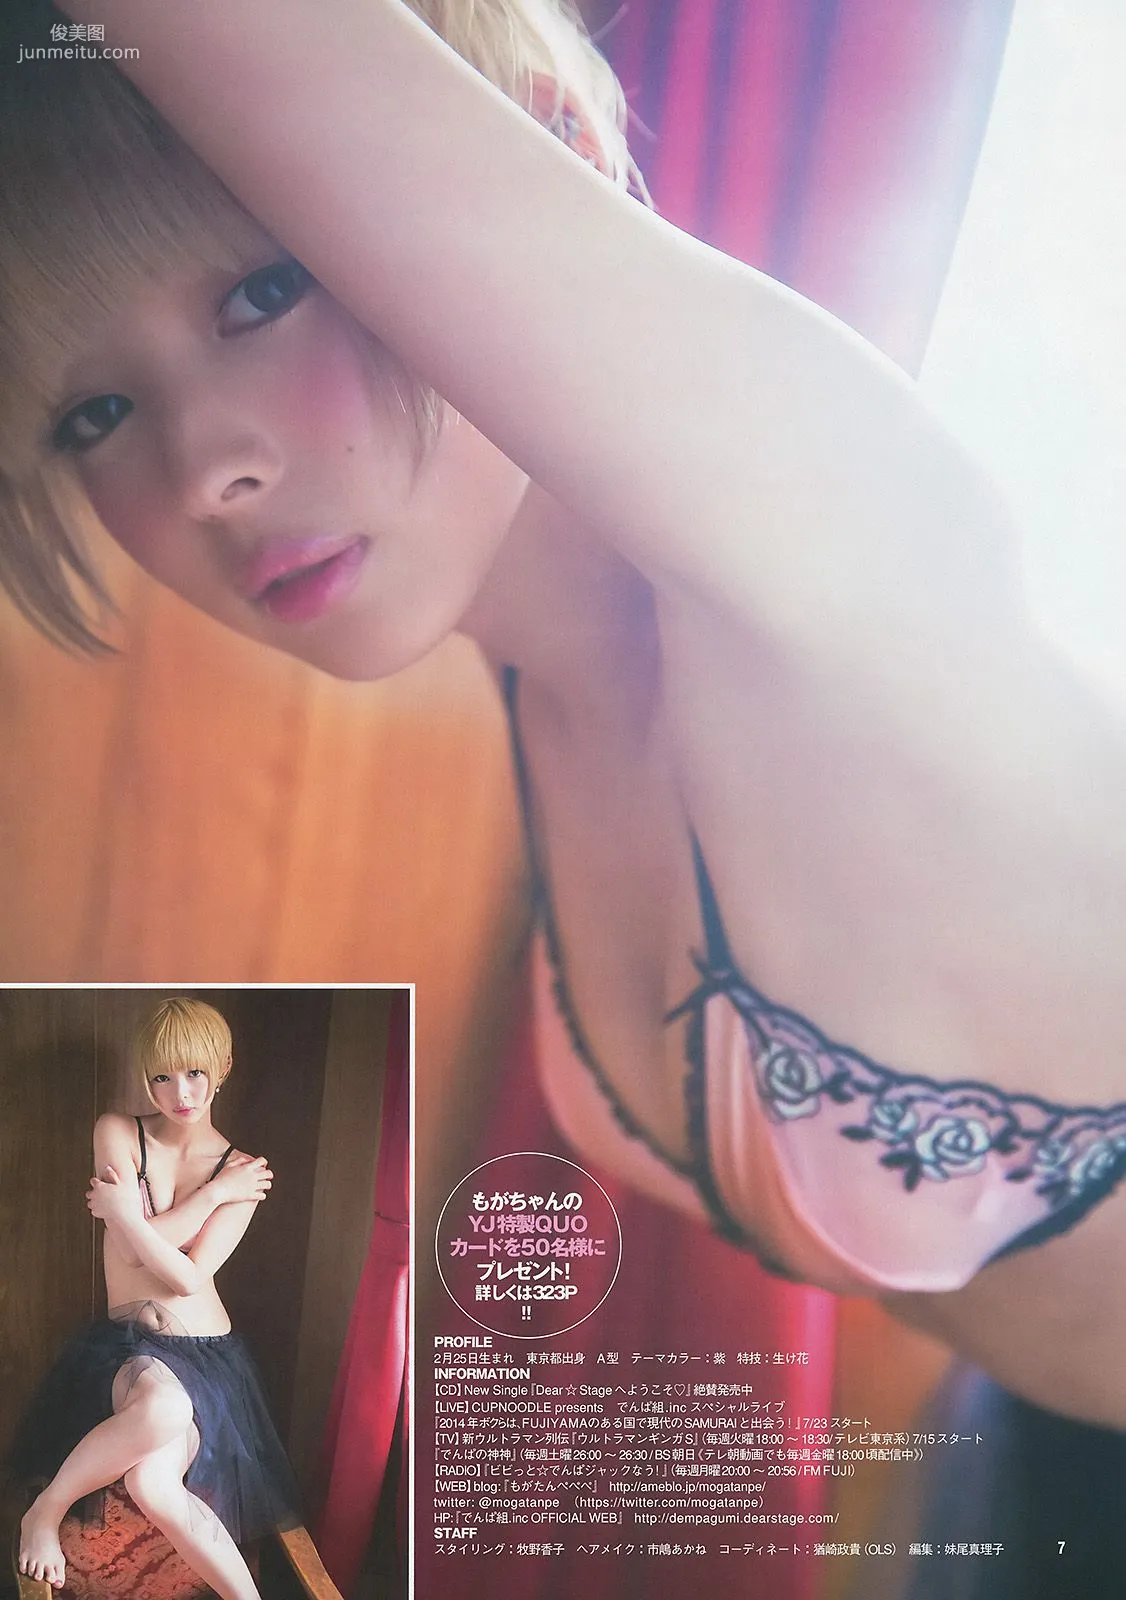 最上もが 葵わかな [Weekly Young Jump] 2014年No.27 写真杂志8